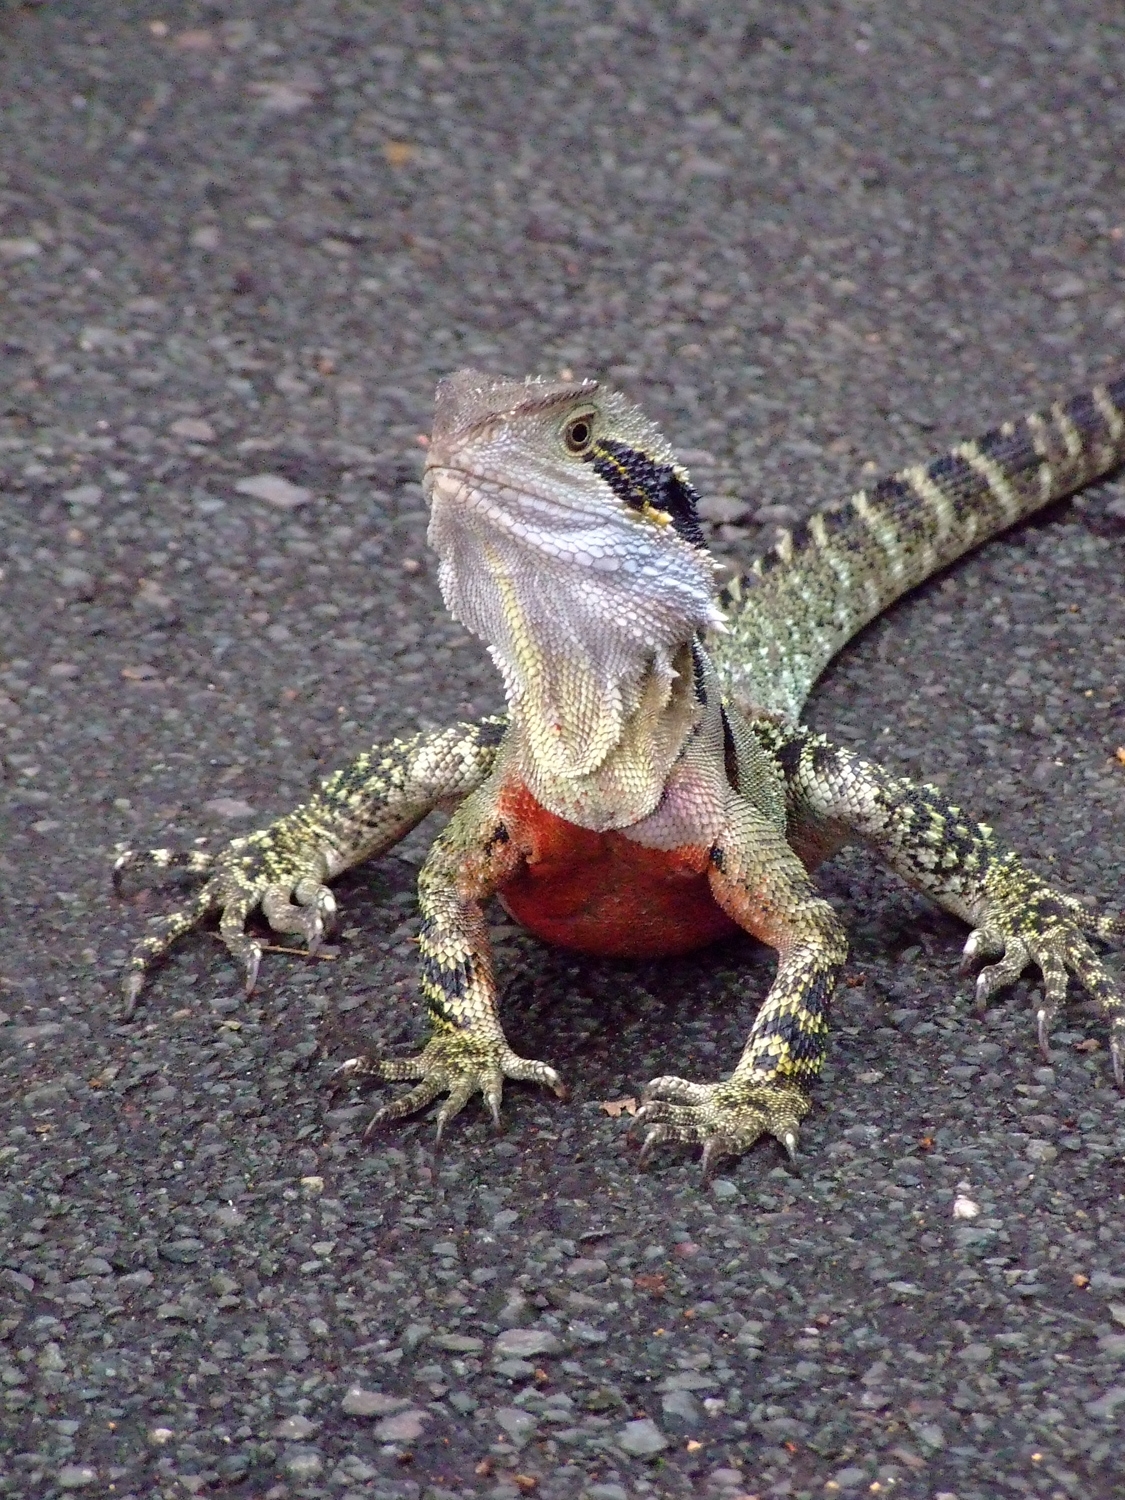 Brisbane Lizard, AKA Brizzy Lizzy